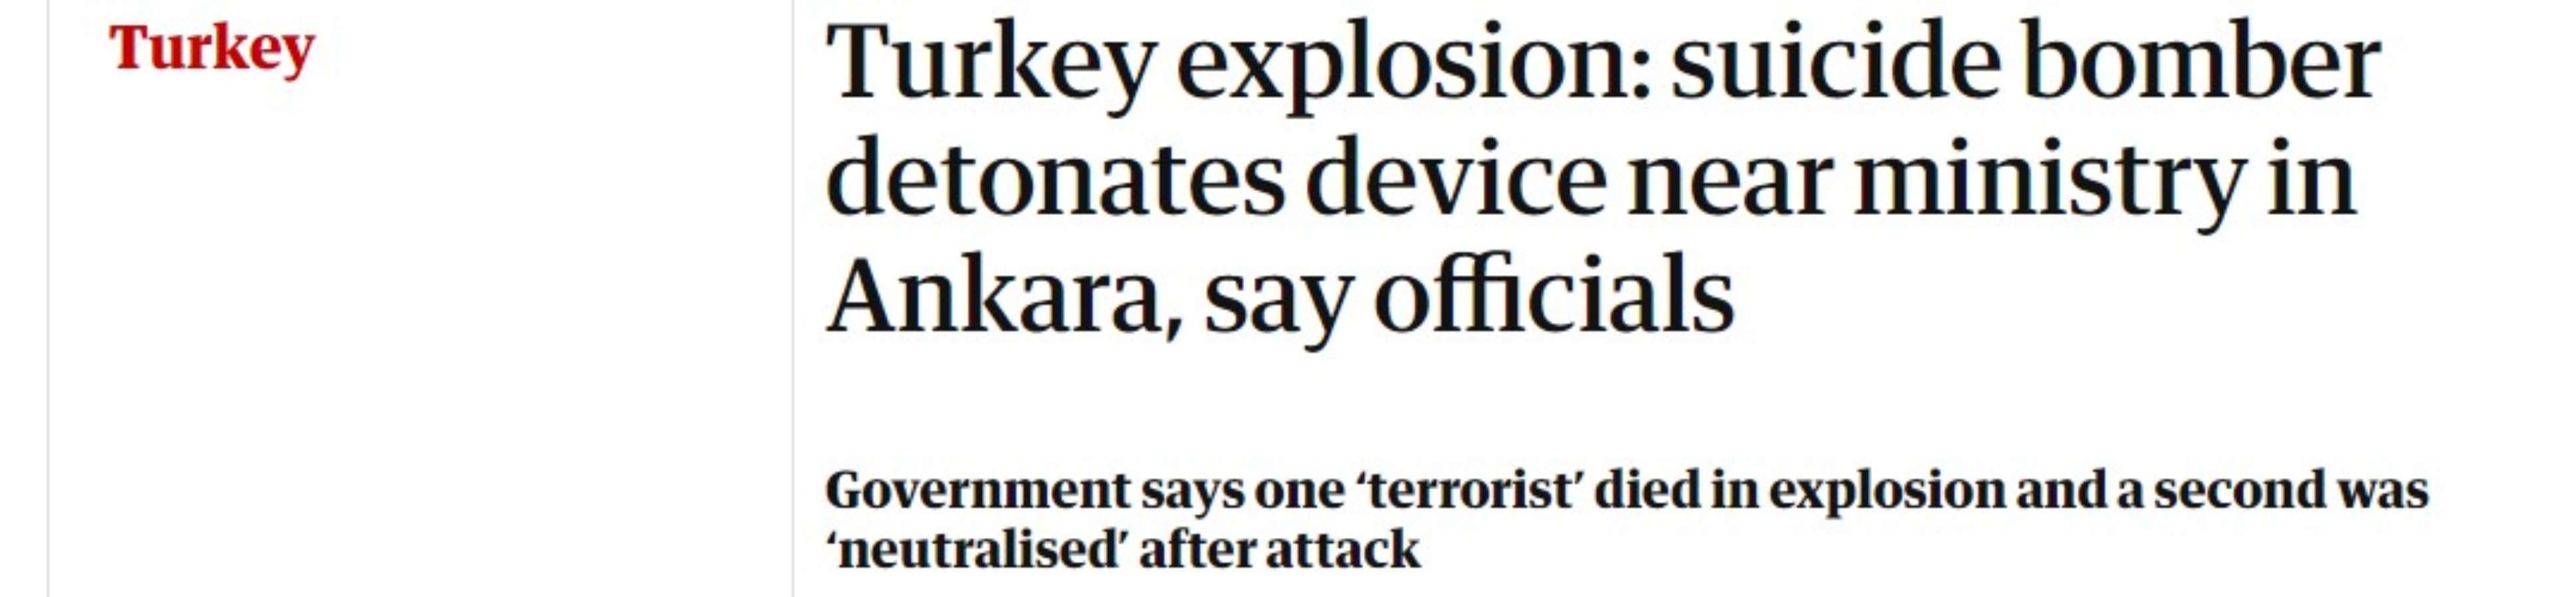 <h3>GUARDIAN</h3>
<p>İngiltere'nin önde gelen gazetelerinden Guardian, Ankara'da yaşanan saldırıyı <strong><em>"Türkiye'de patlama: Yetkililer, intihar bombacısının Ankara'da bakanlık yakınlarında düzeneği patlattığını söyledi"</em></strong> başlığıyla servis etti. </p>
<p>Guardian,<strong><em> "Hükümet yetkilileri, saldırganların etkisiz hale getirildiğini açıkladı"</em></strong> ifadesinde bulundu. </p>